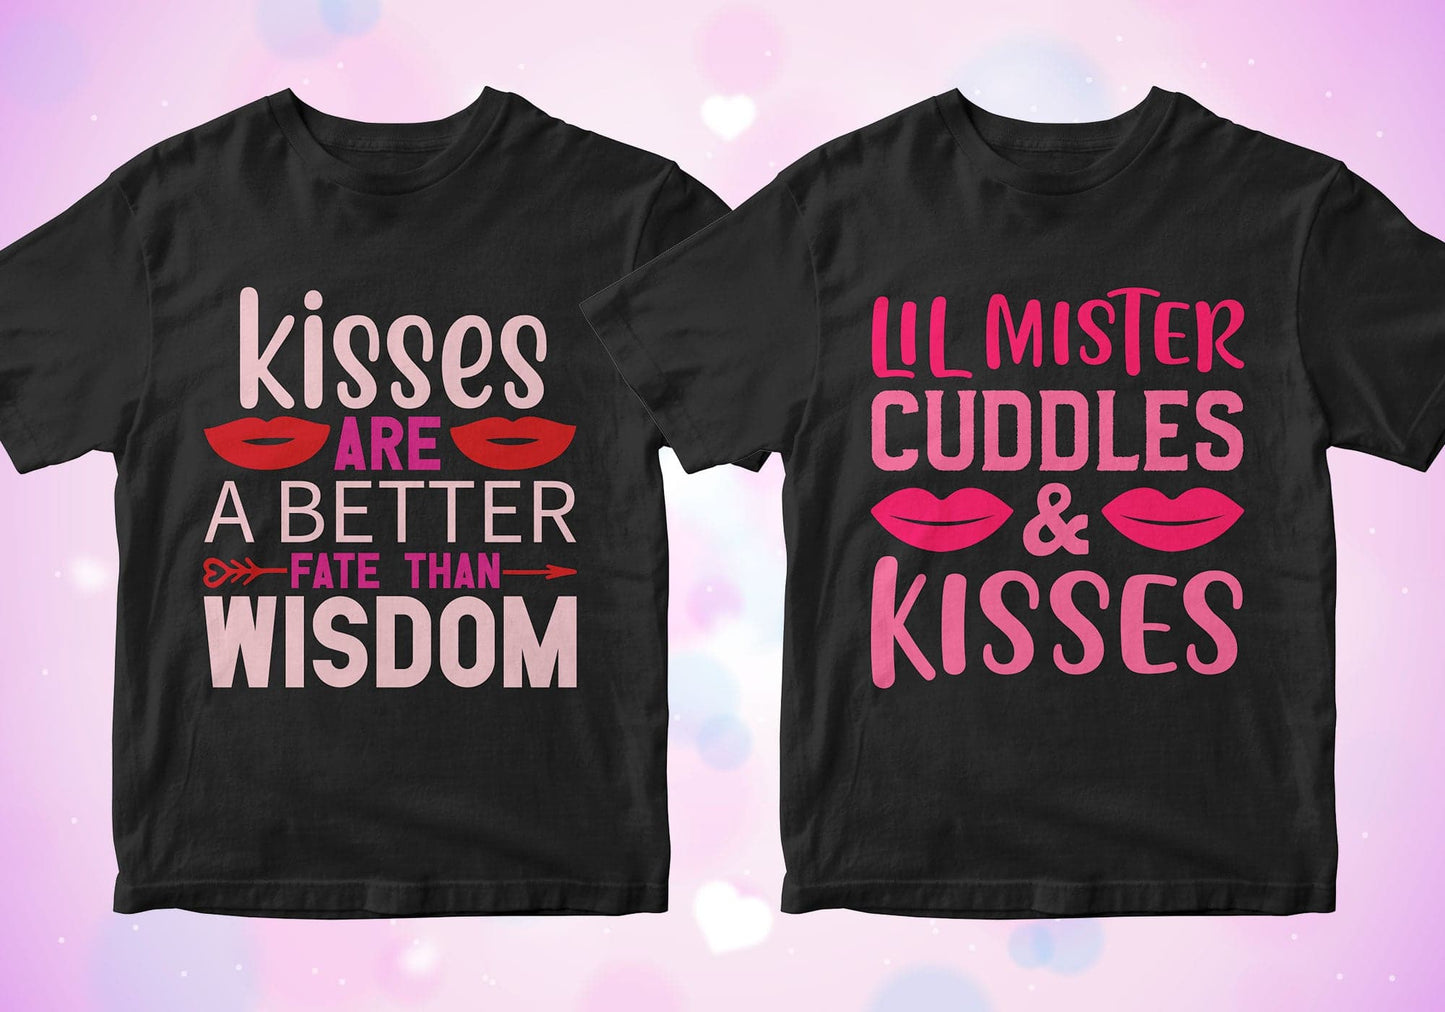 Valentine's Day 50 Editable T-shirt Designs Bundle Part 1